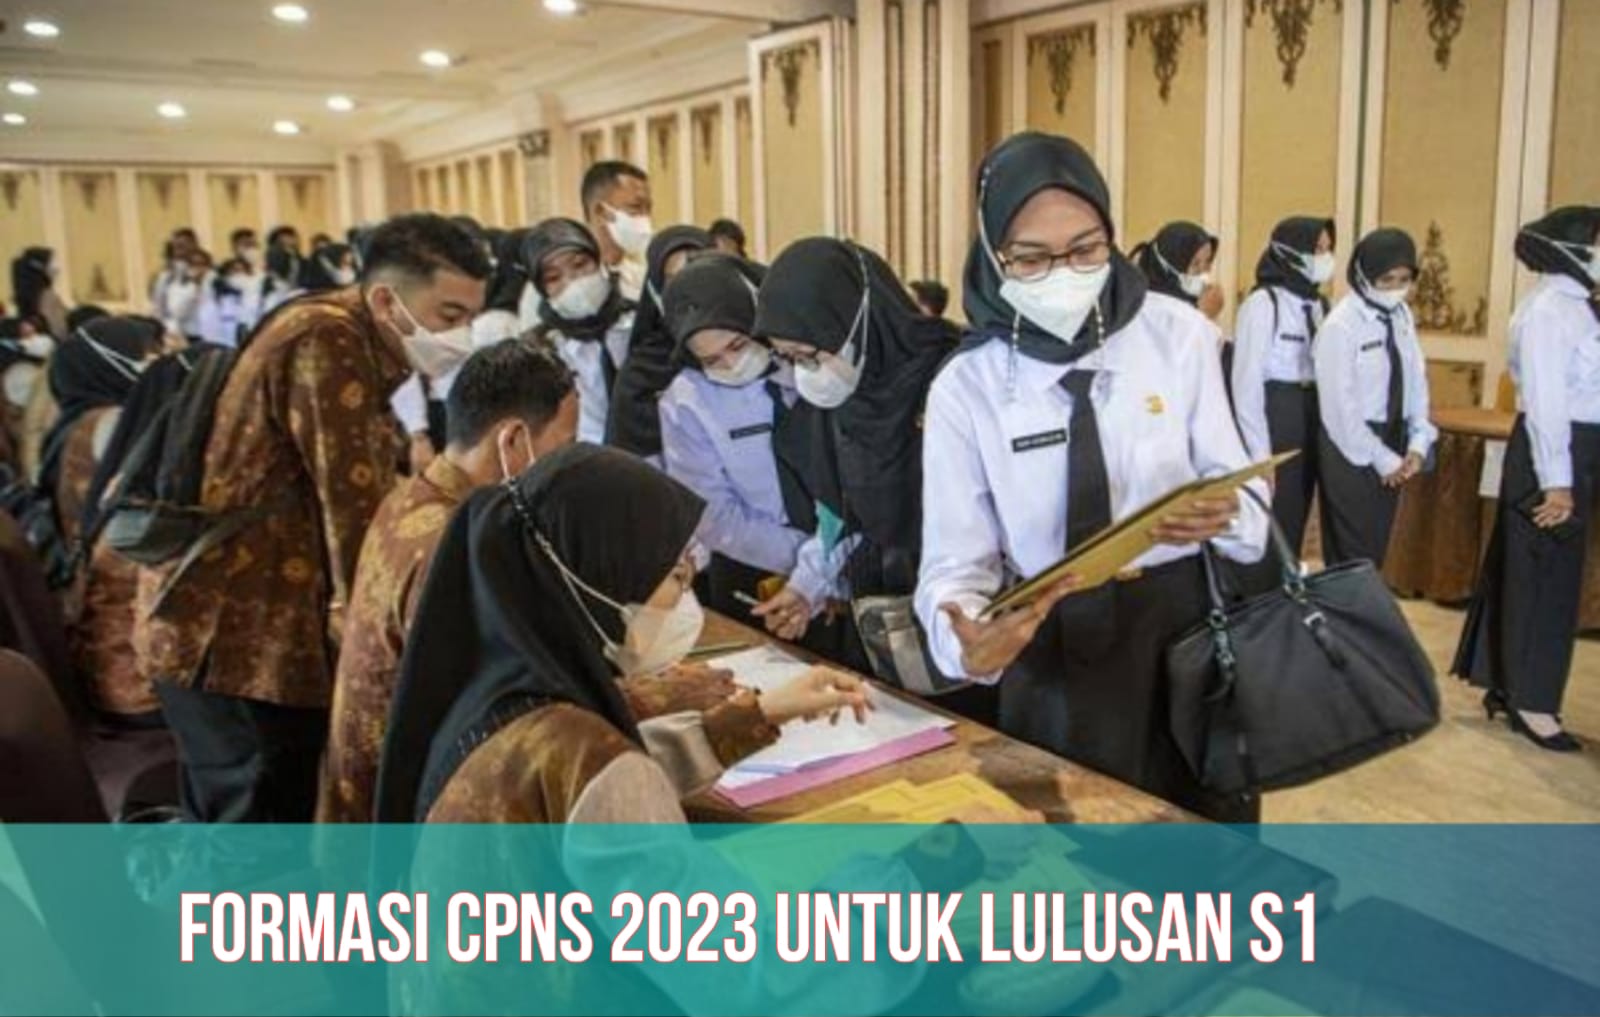 CPNS 2023 Dibuka 17 September, Formasi Terbuka untuk Lulusan S1 Semua Jurusan, Segera Siapkan 8 Berkas Ini